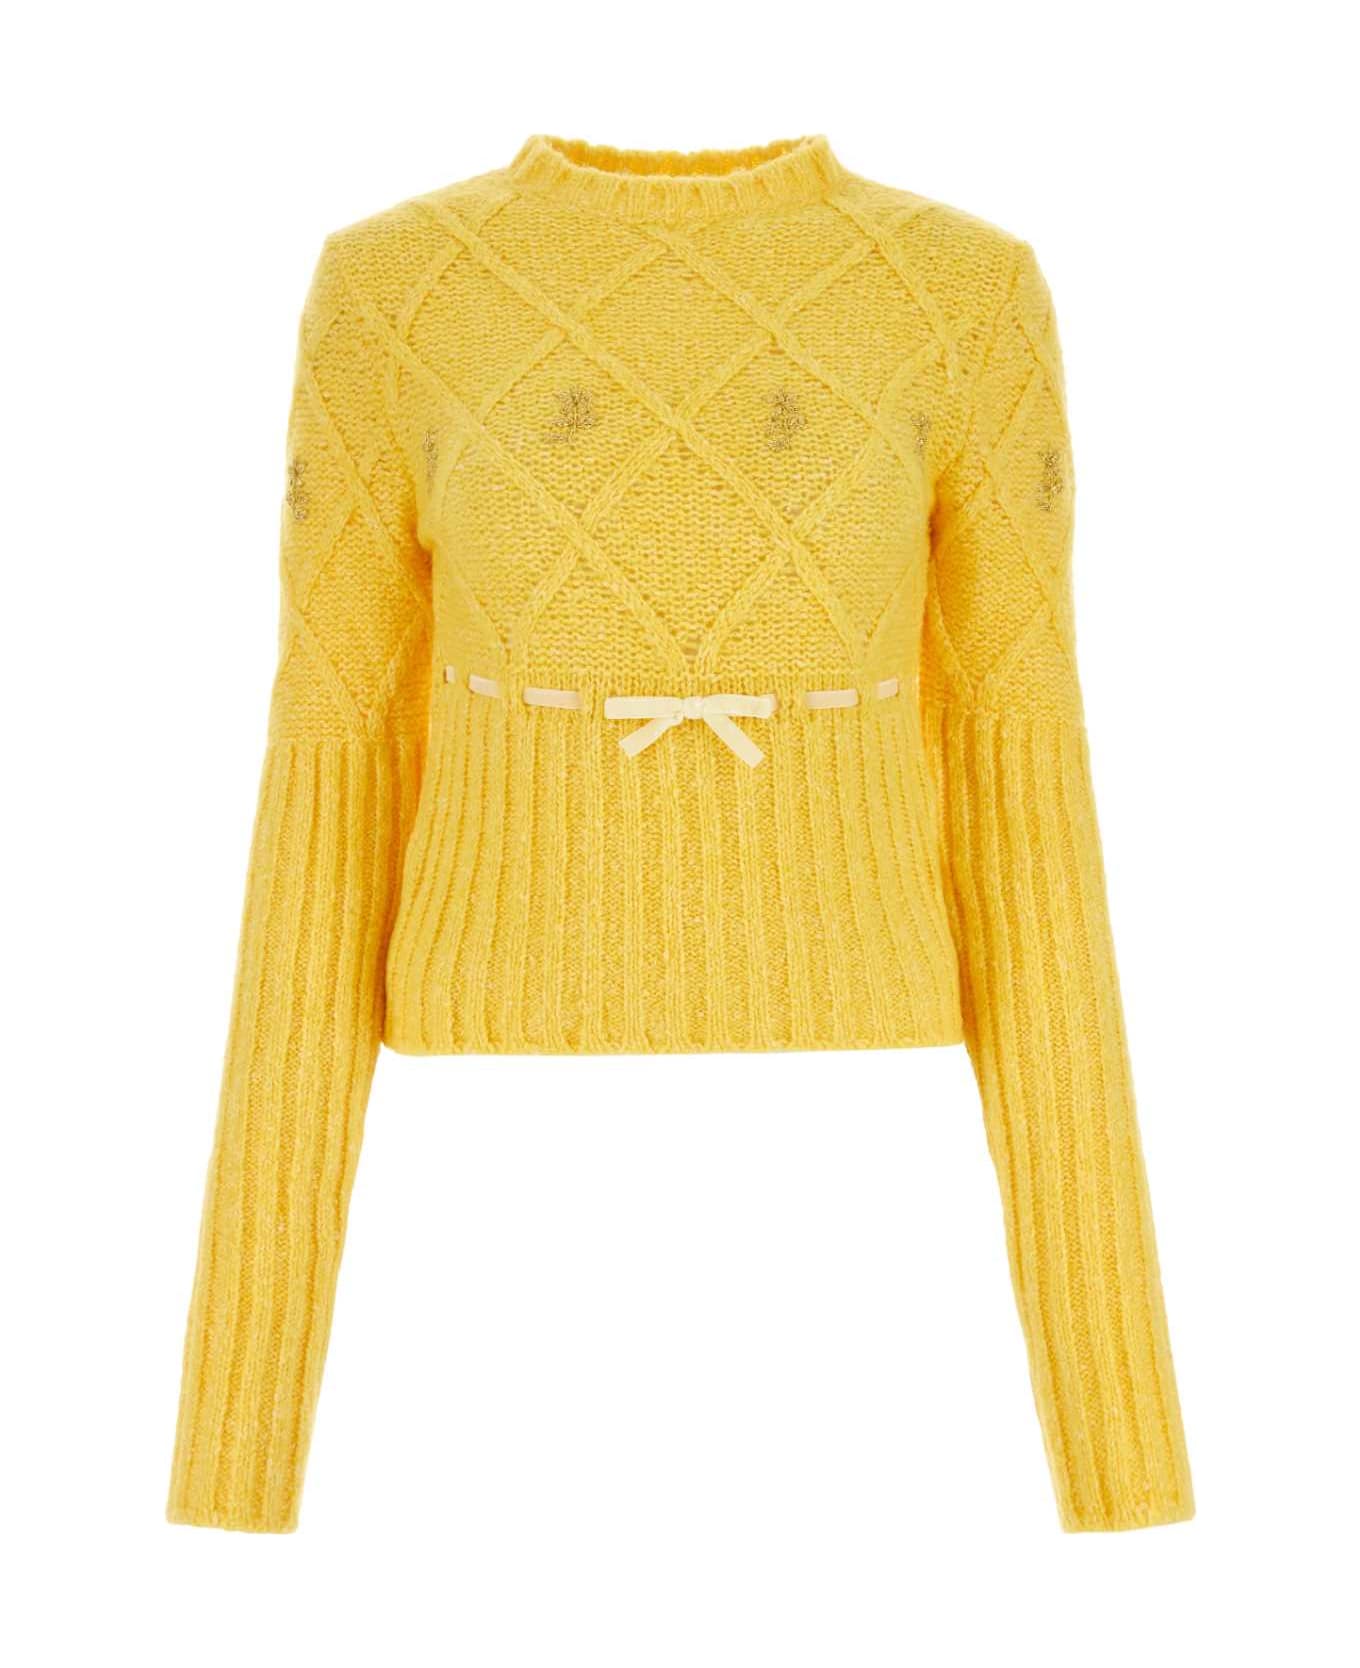 Cormio Yellow Wool Blend Sweater - YELLOW